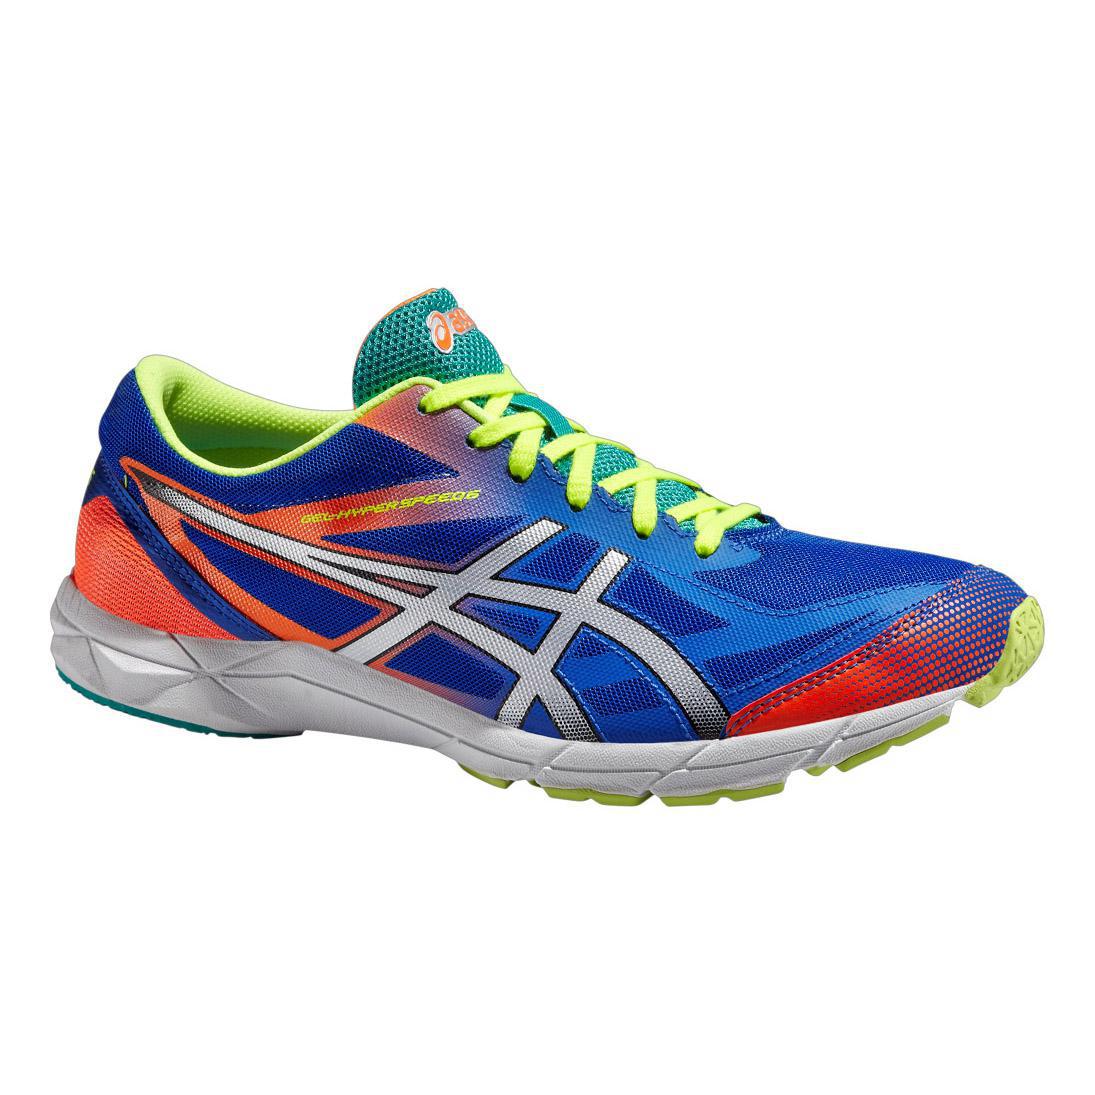 Asics Mens GEL-Hyper Speed 6 Running Shoes - Blue/Orange - Tennisnuts.com